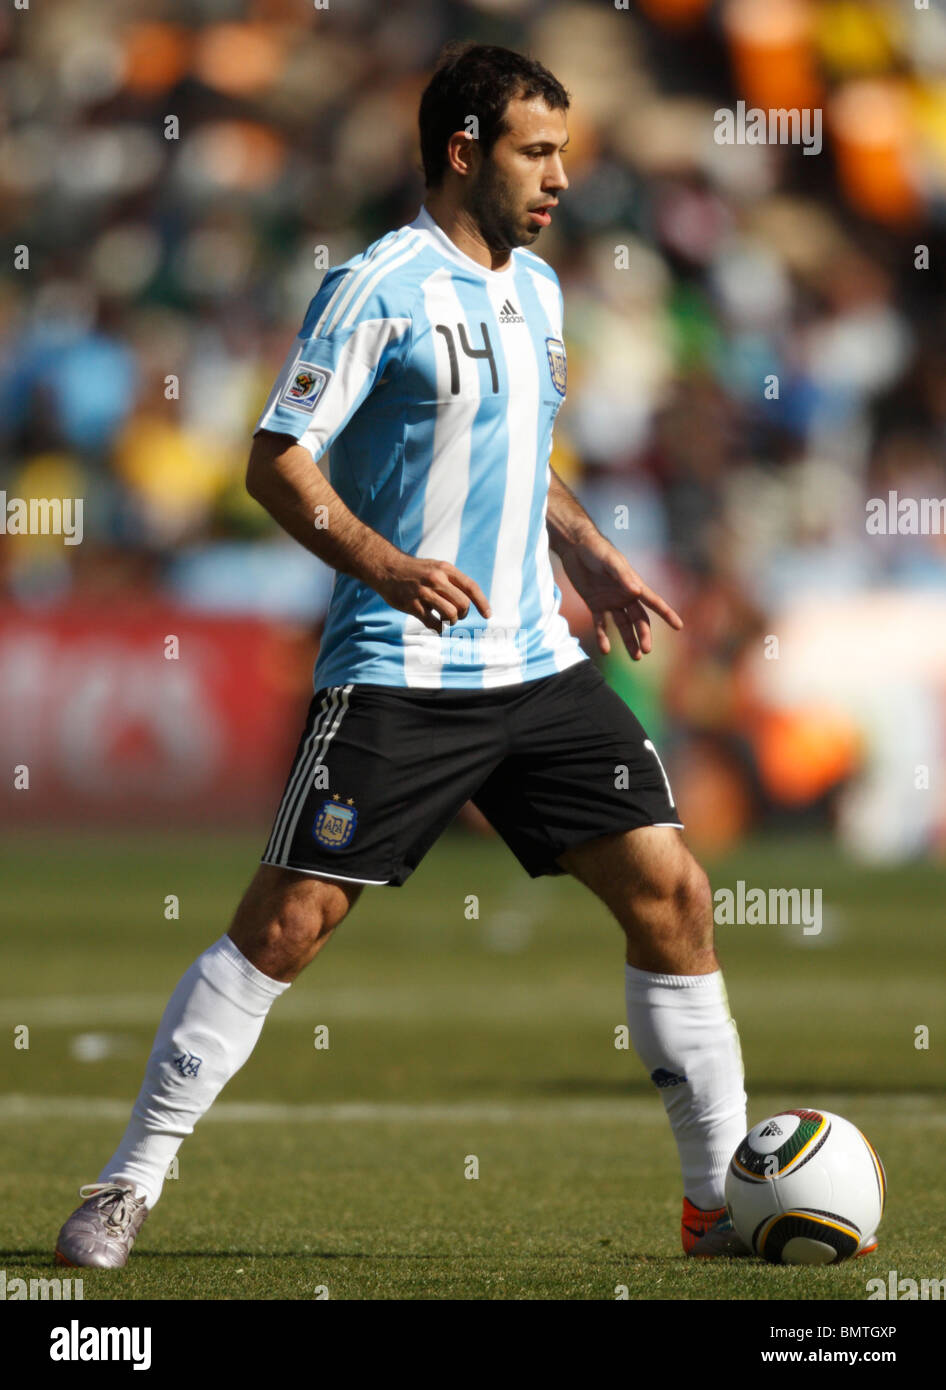 El capitán del equipo, Javier Mascherano de Argentina en acción durante una Copa Mundial de la FIFA 2010 fútbol contra Corea del Sur. Foto de stock